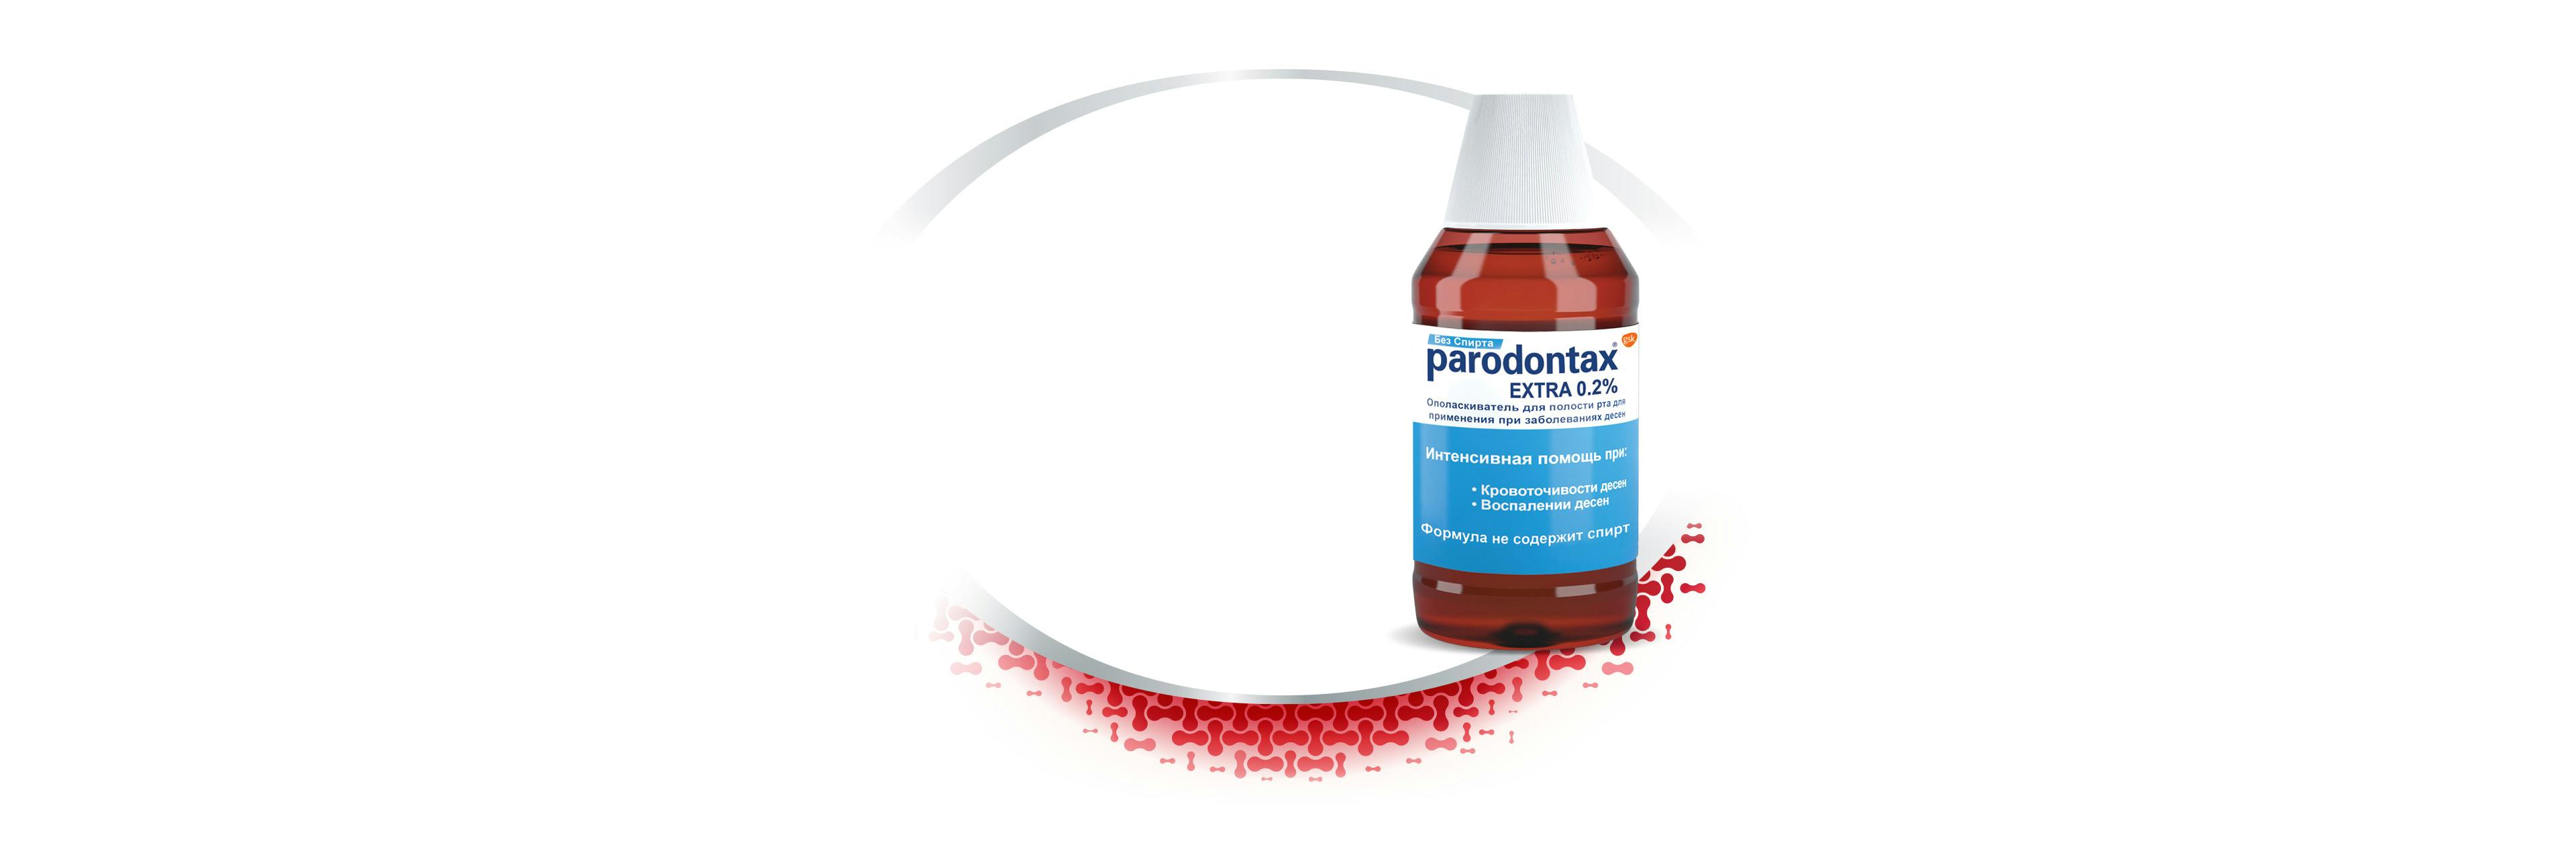 Интенсивная помощь при кровоточивости и воспалении десен: ополаскиватель для полости рта parodontax Extra 0.2% без спирта